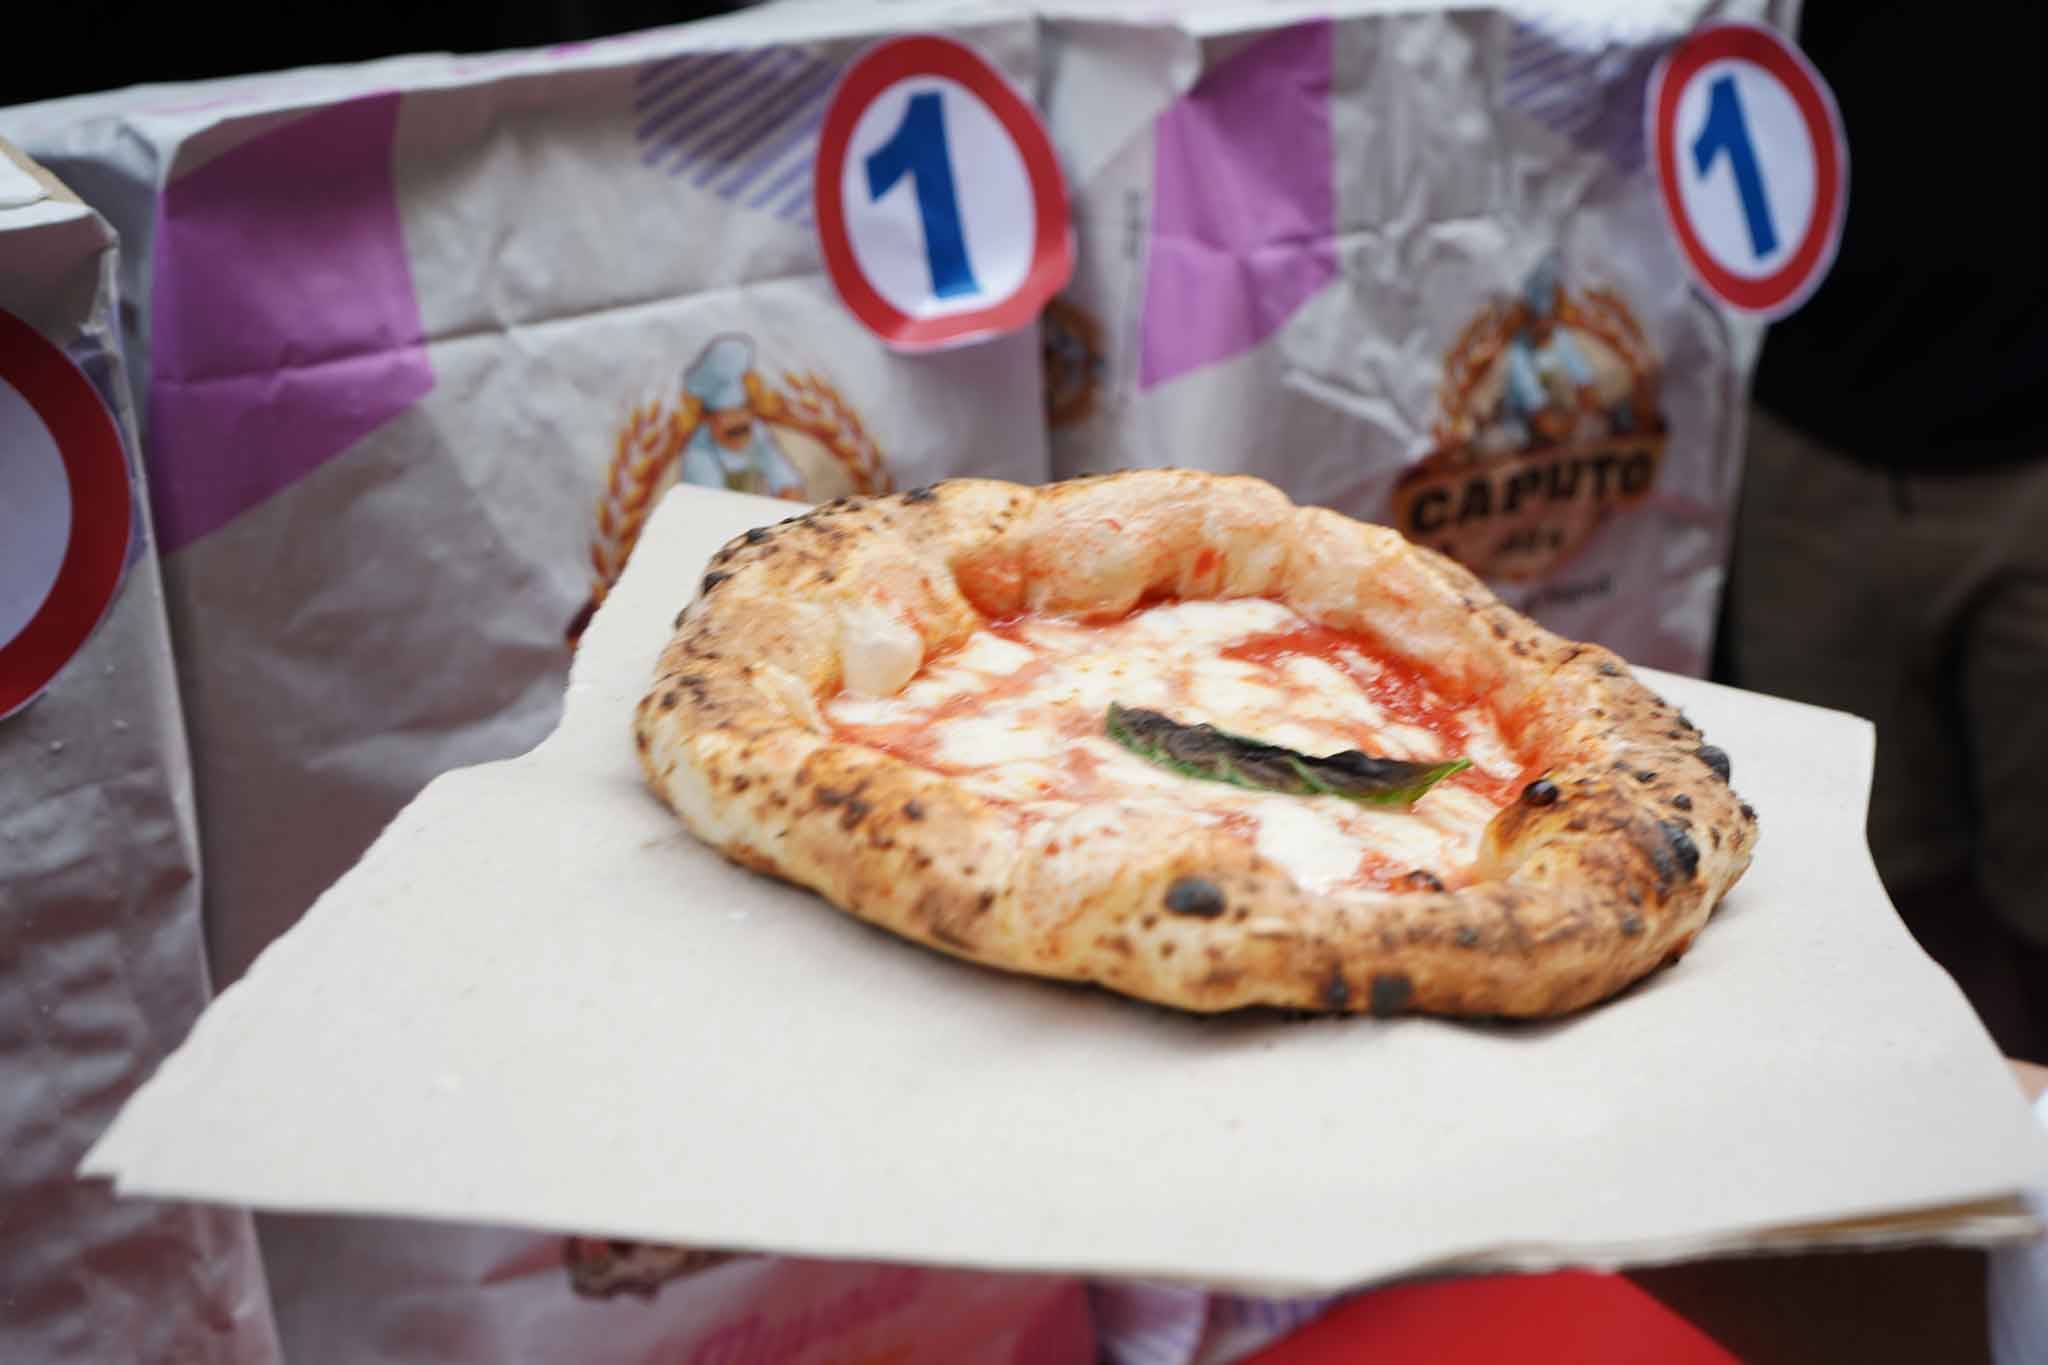 Nuvola, nuova farina per la pizza contemporanea e pulita di Gino Sorbillo